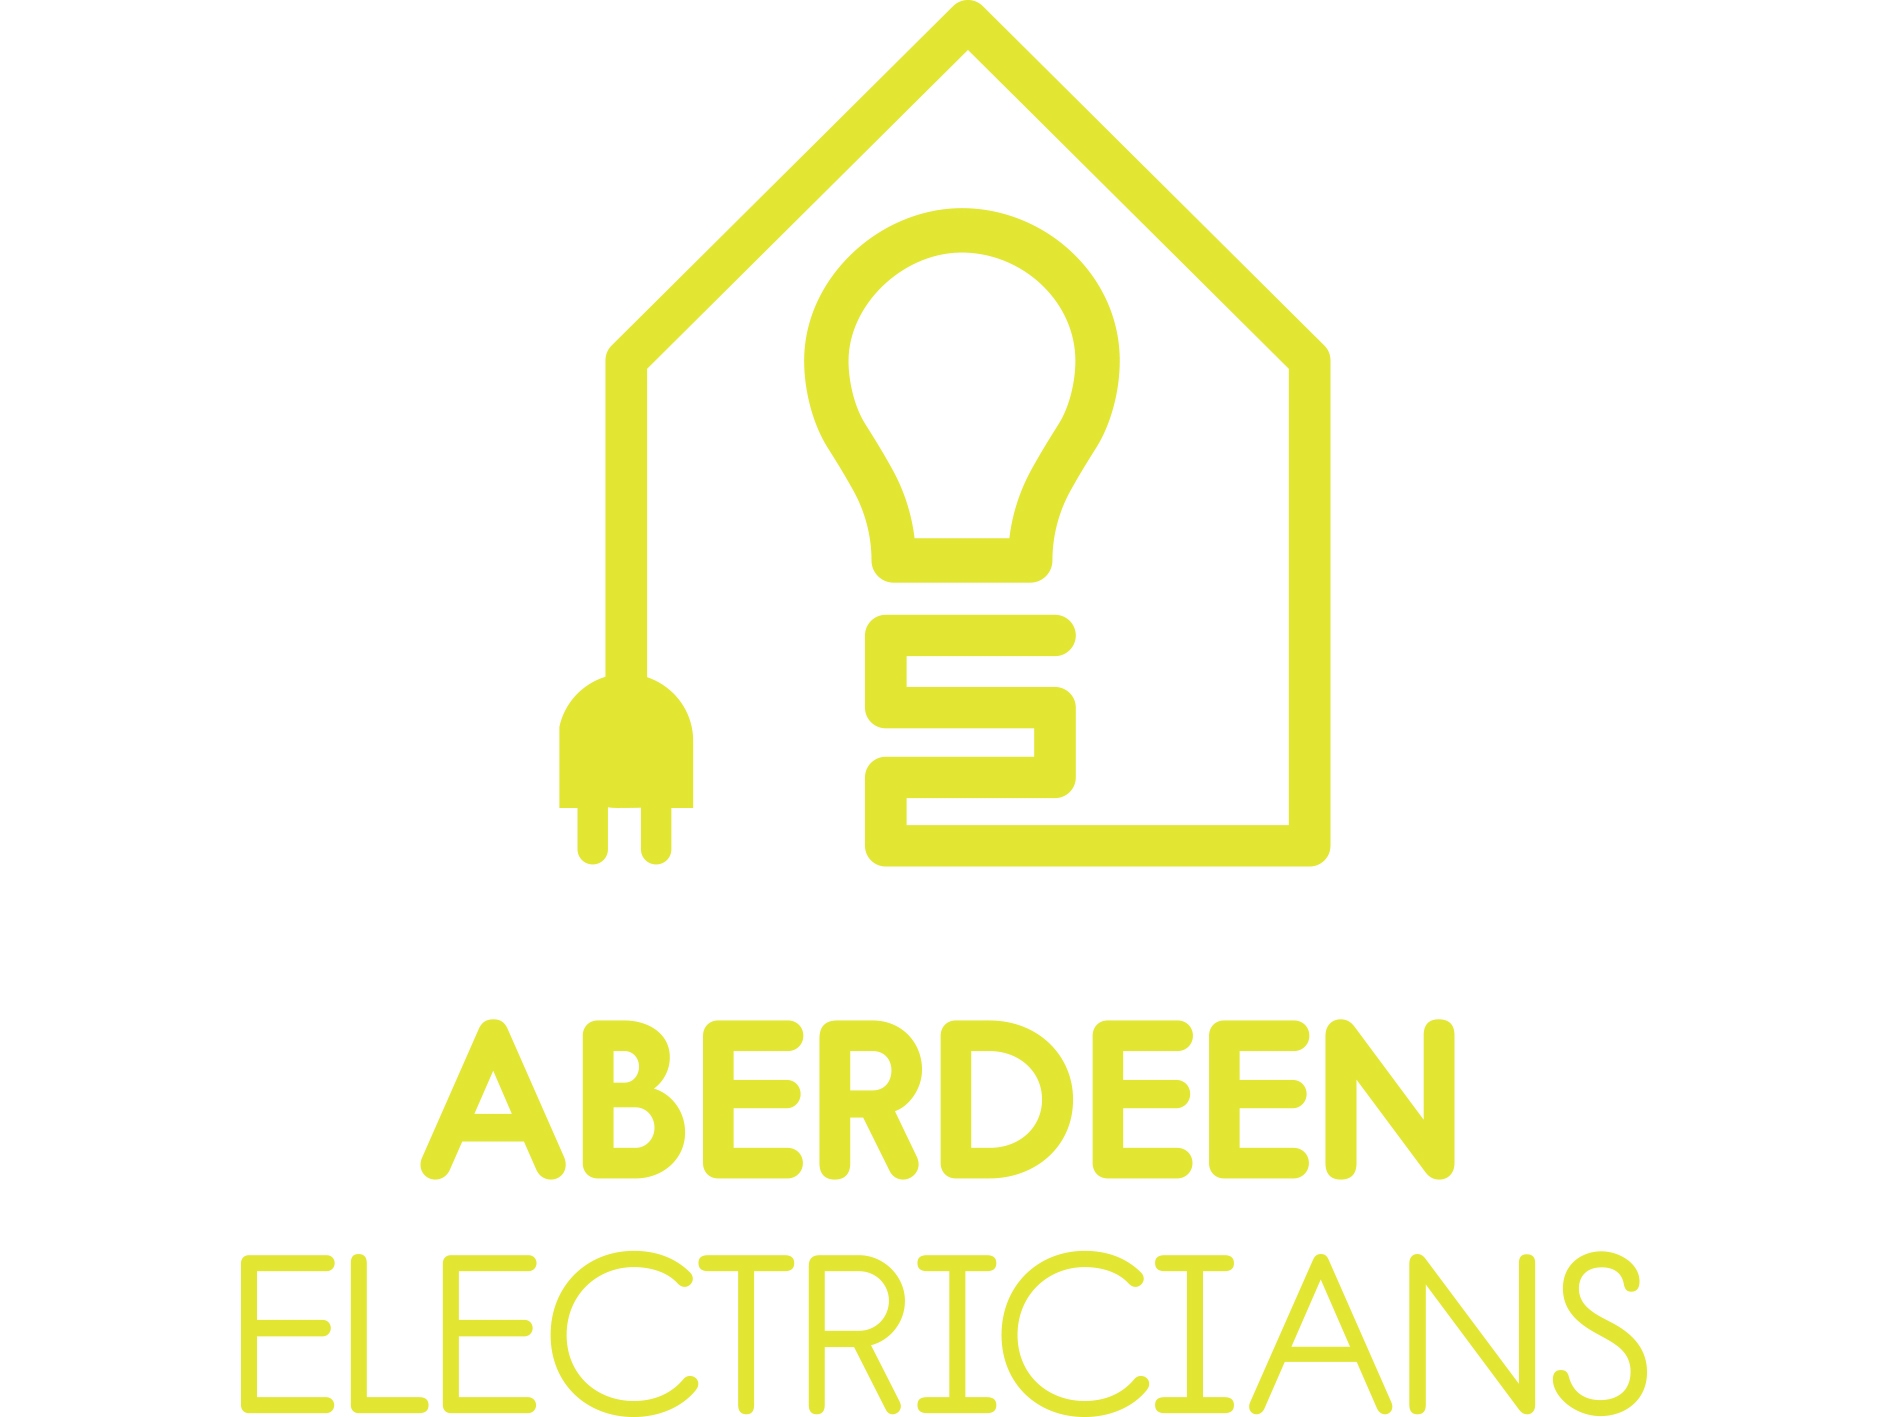 Aberdeen Electricians Ltd